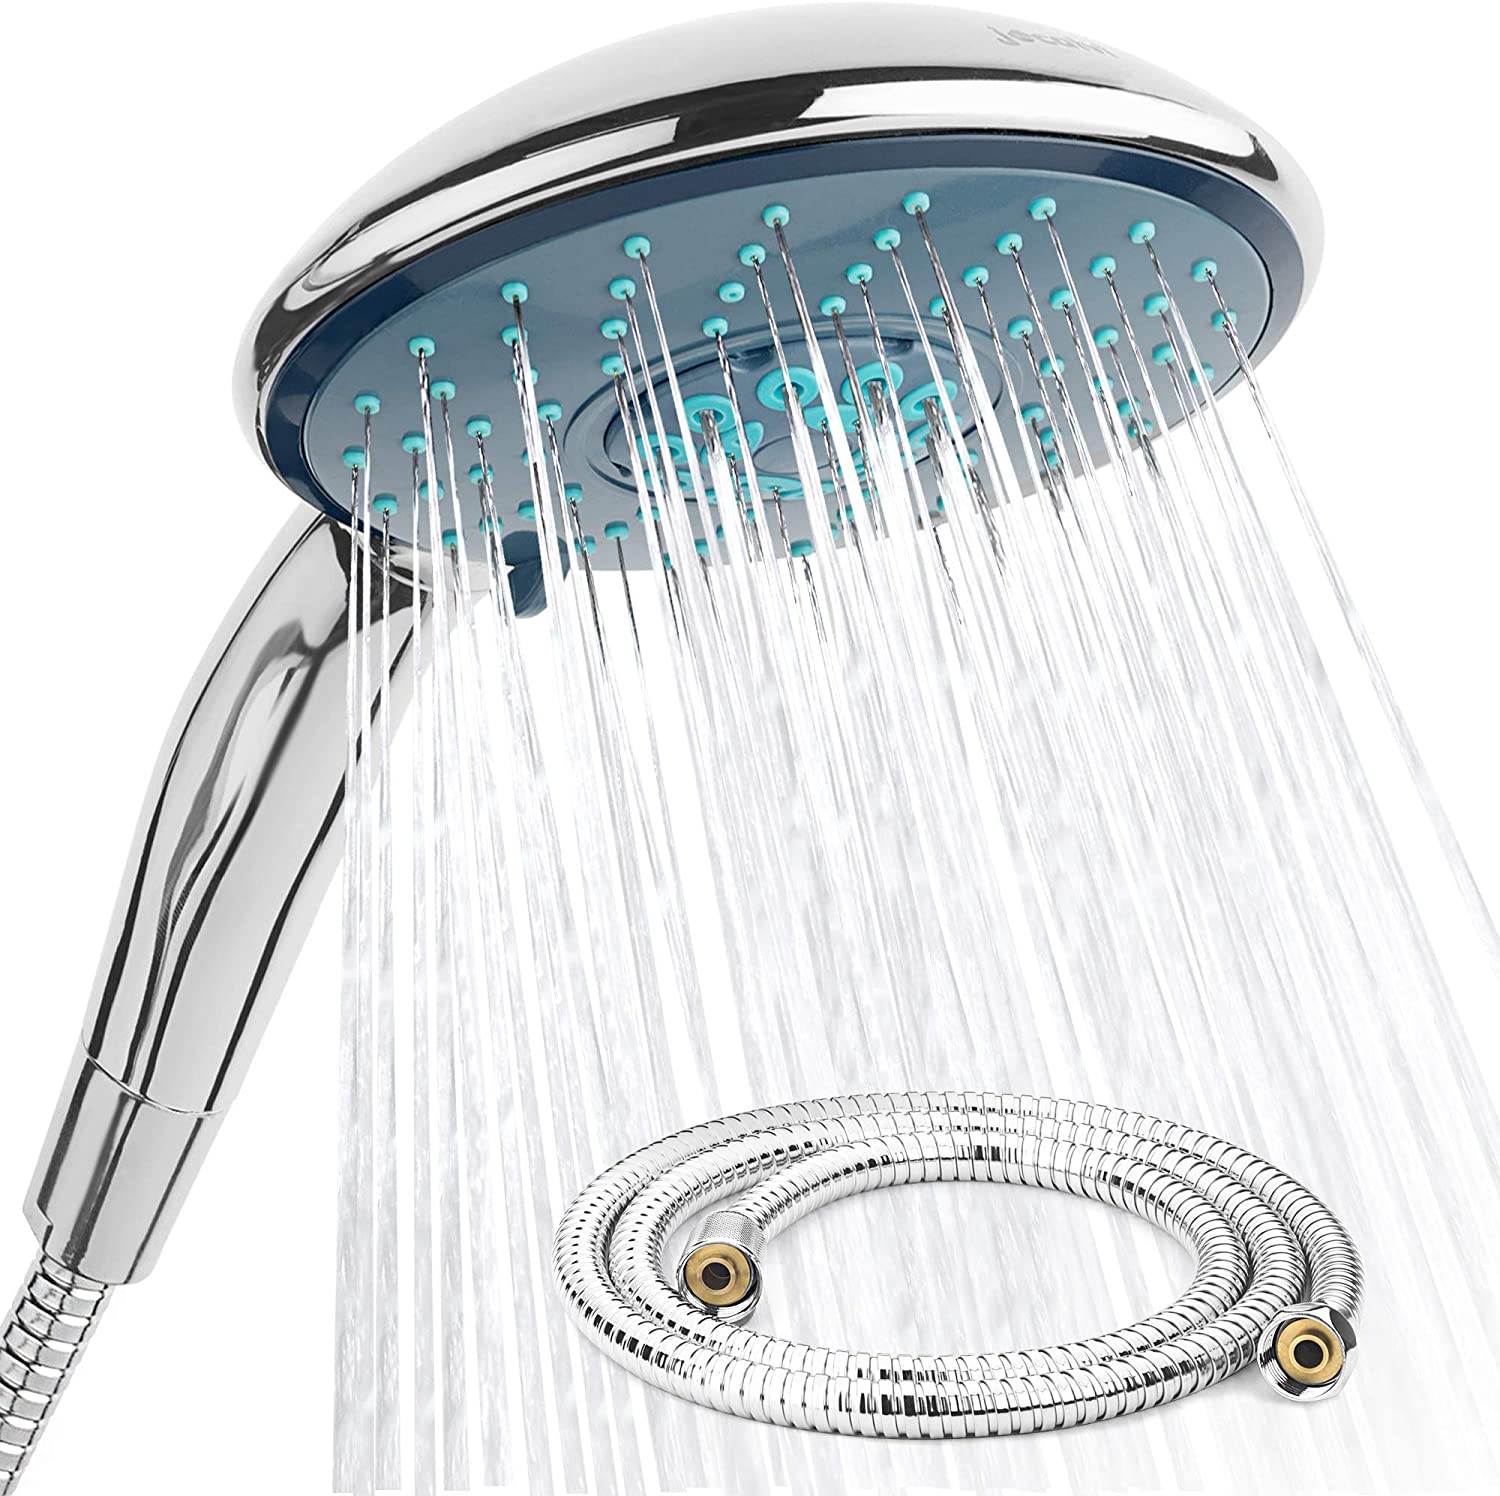 Set doccia con flessibile - XXL Wellness - 4 tipi di getto - Soffione doccia diametro 150 mm con flessibile da 1,5 m - Per il bagno e la doccia